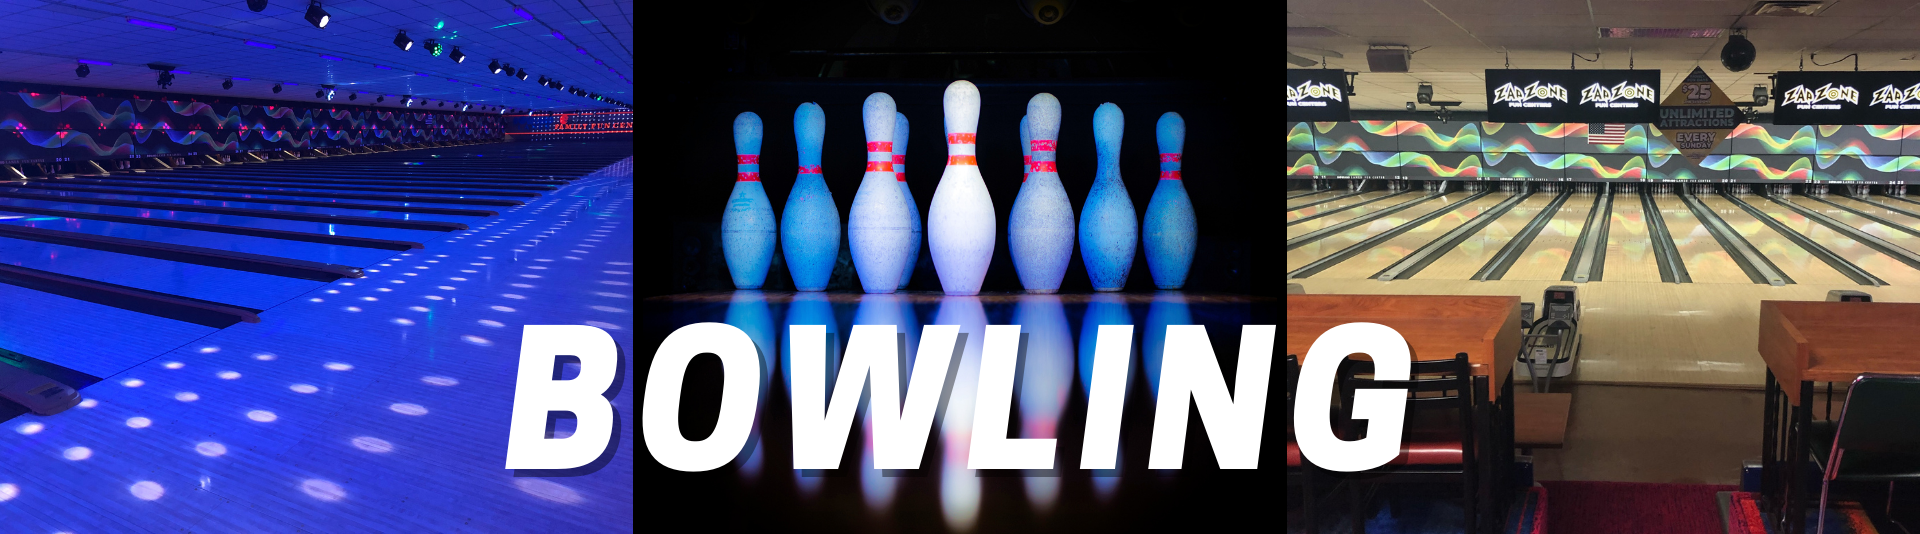 bowlero battle creek bowling